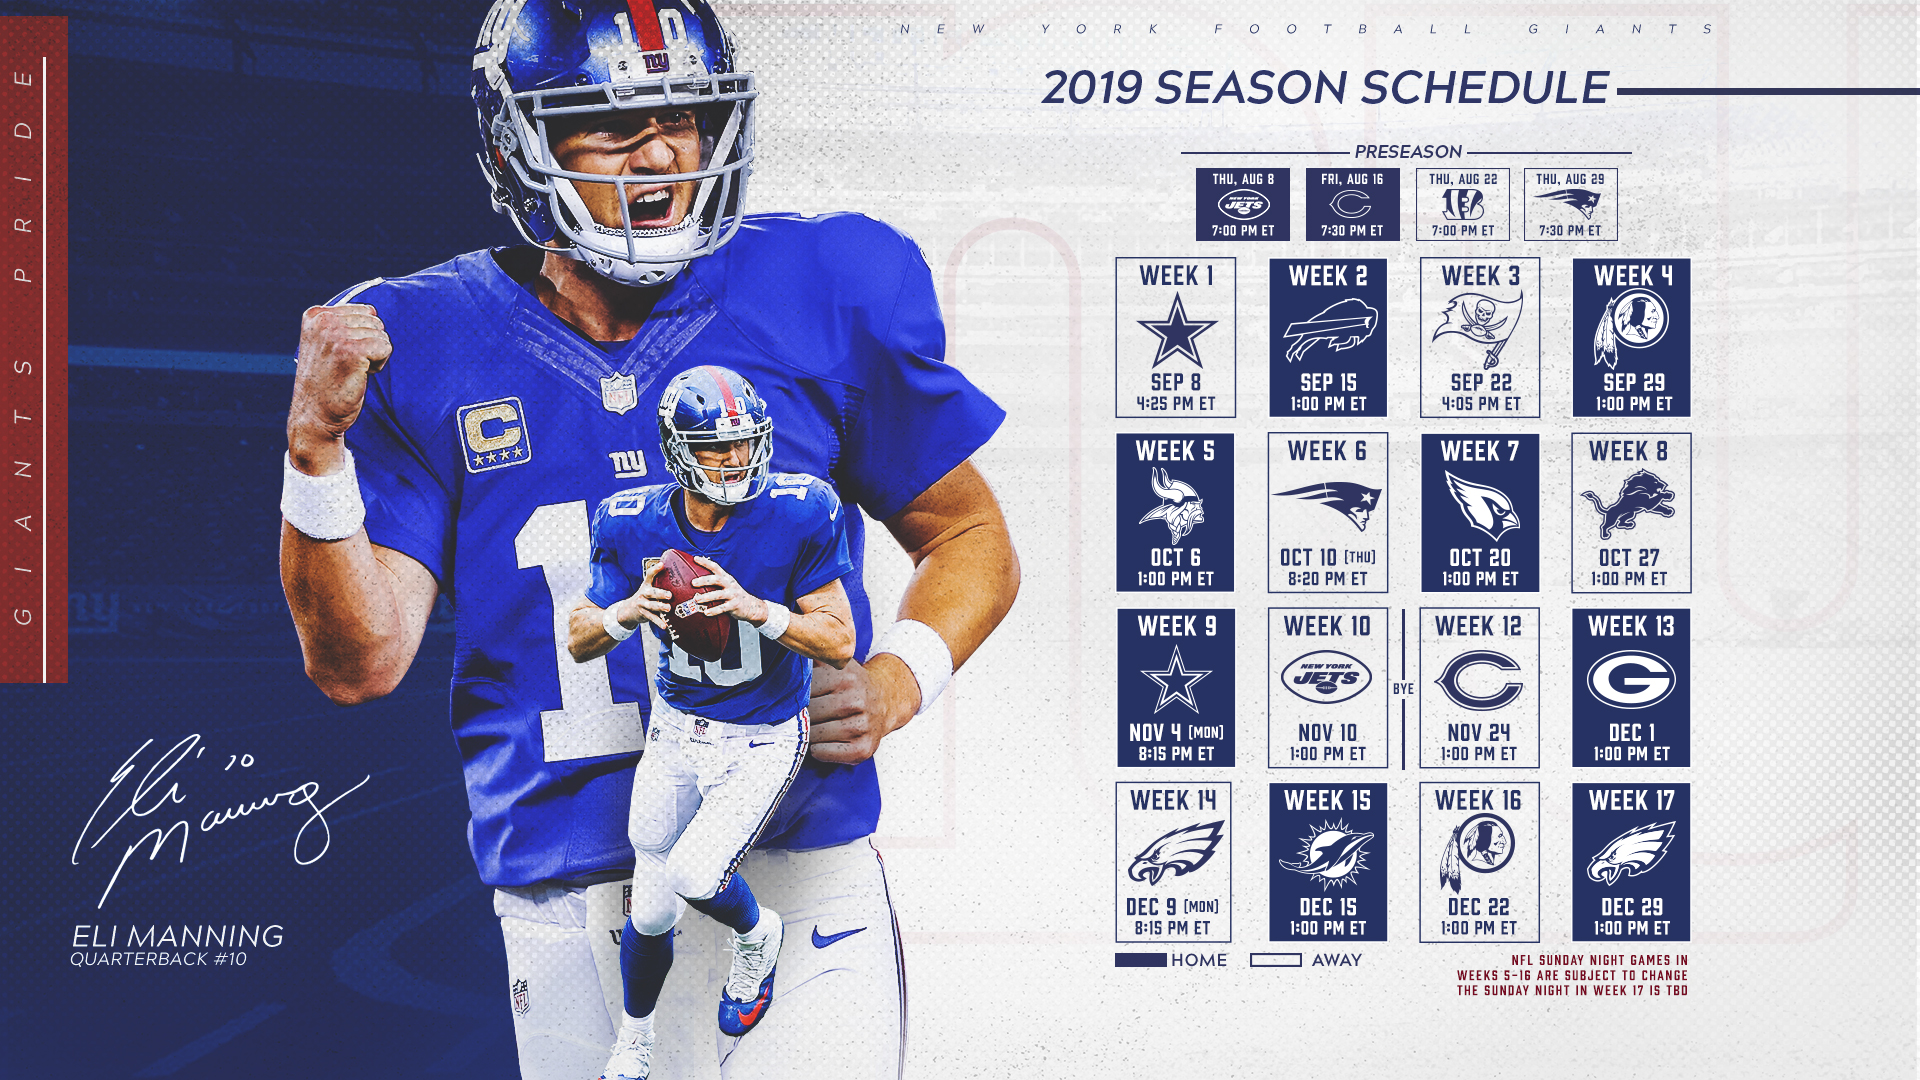 Giants Schedule New York